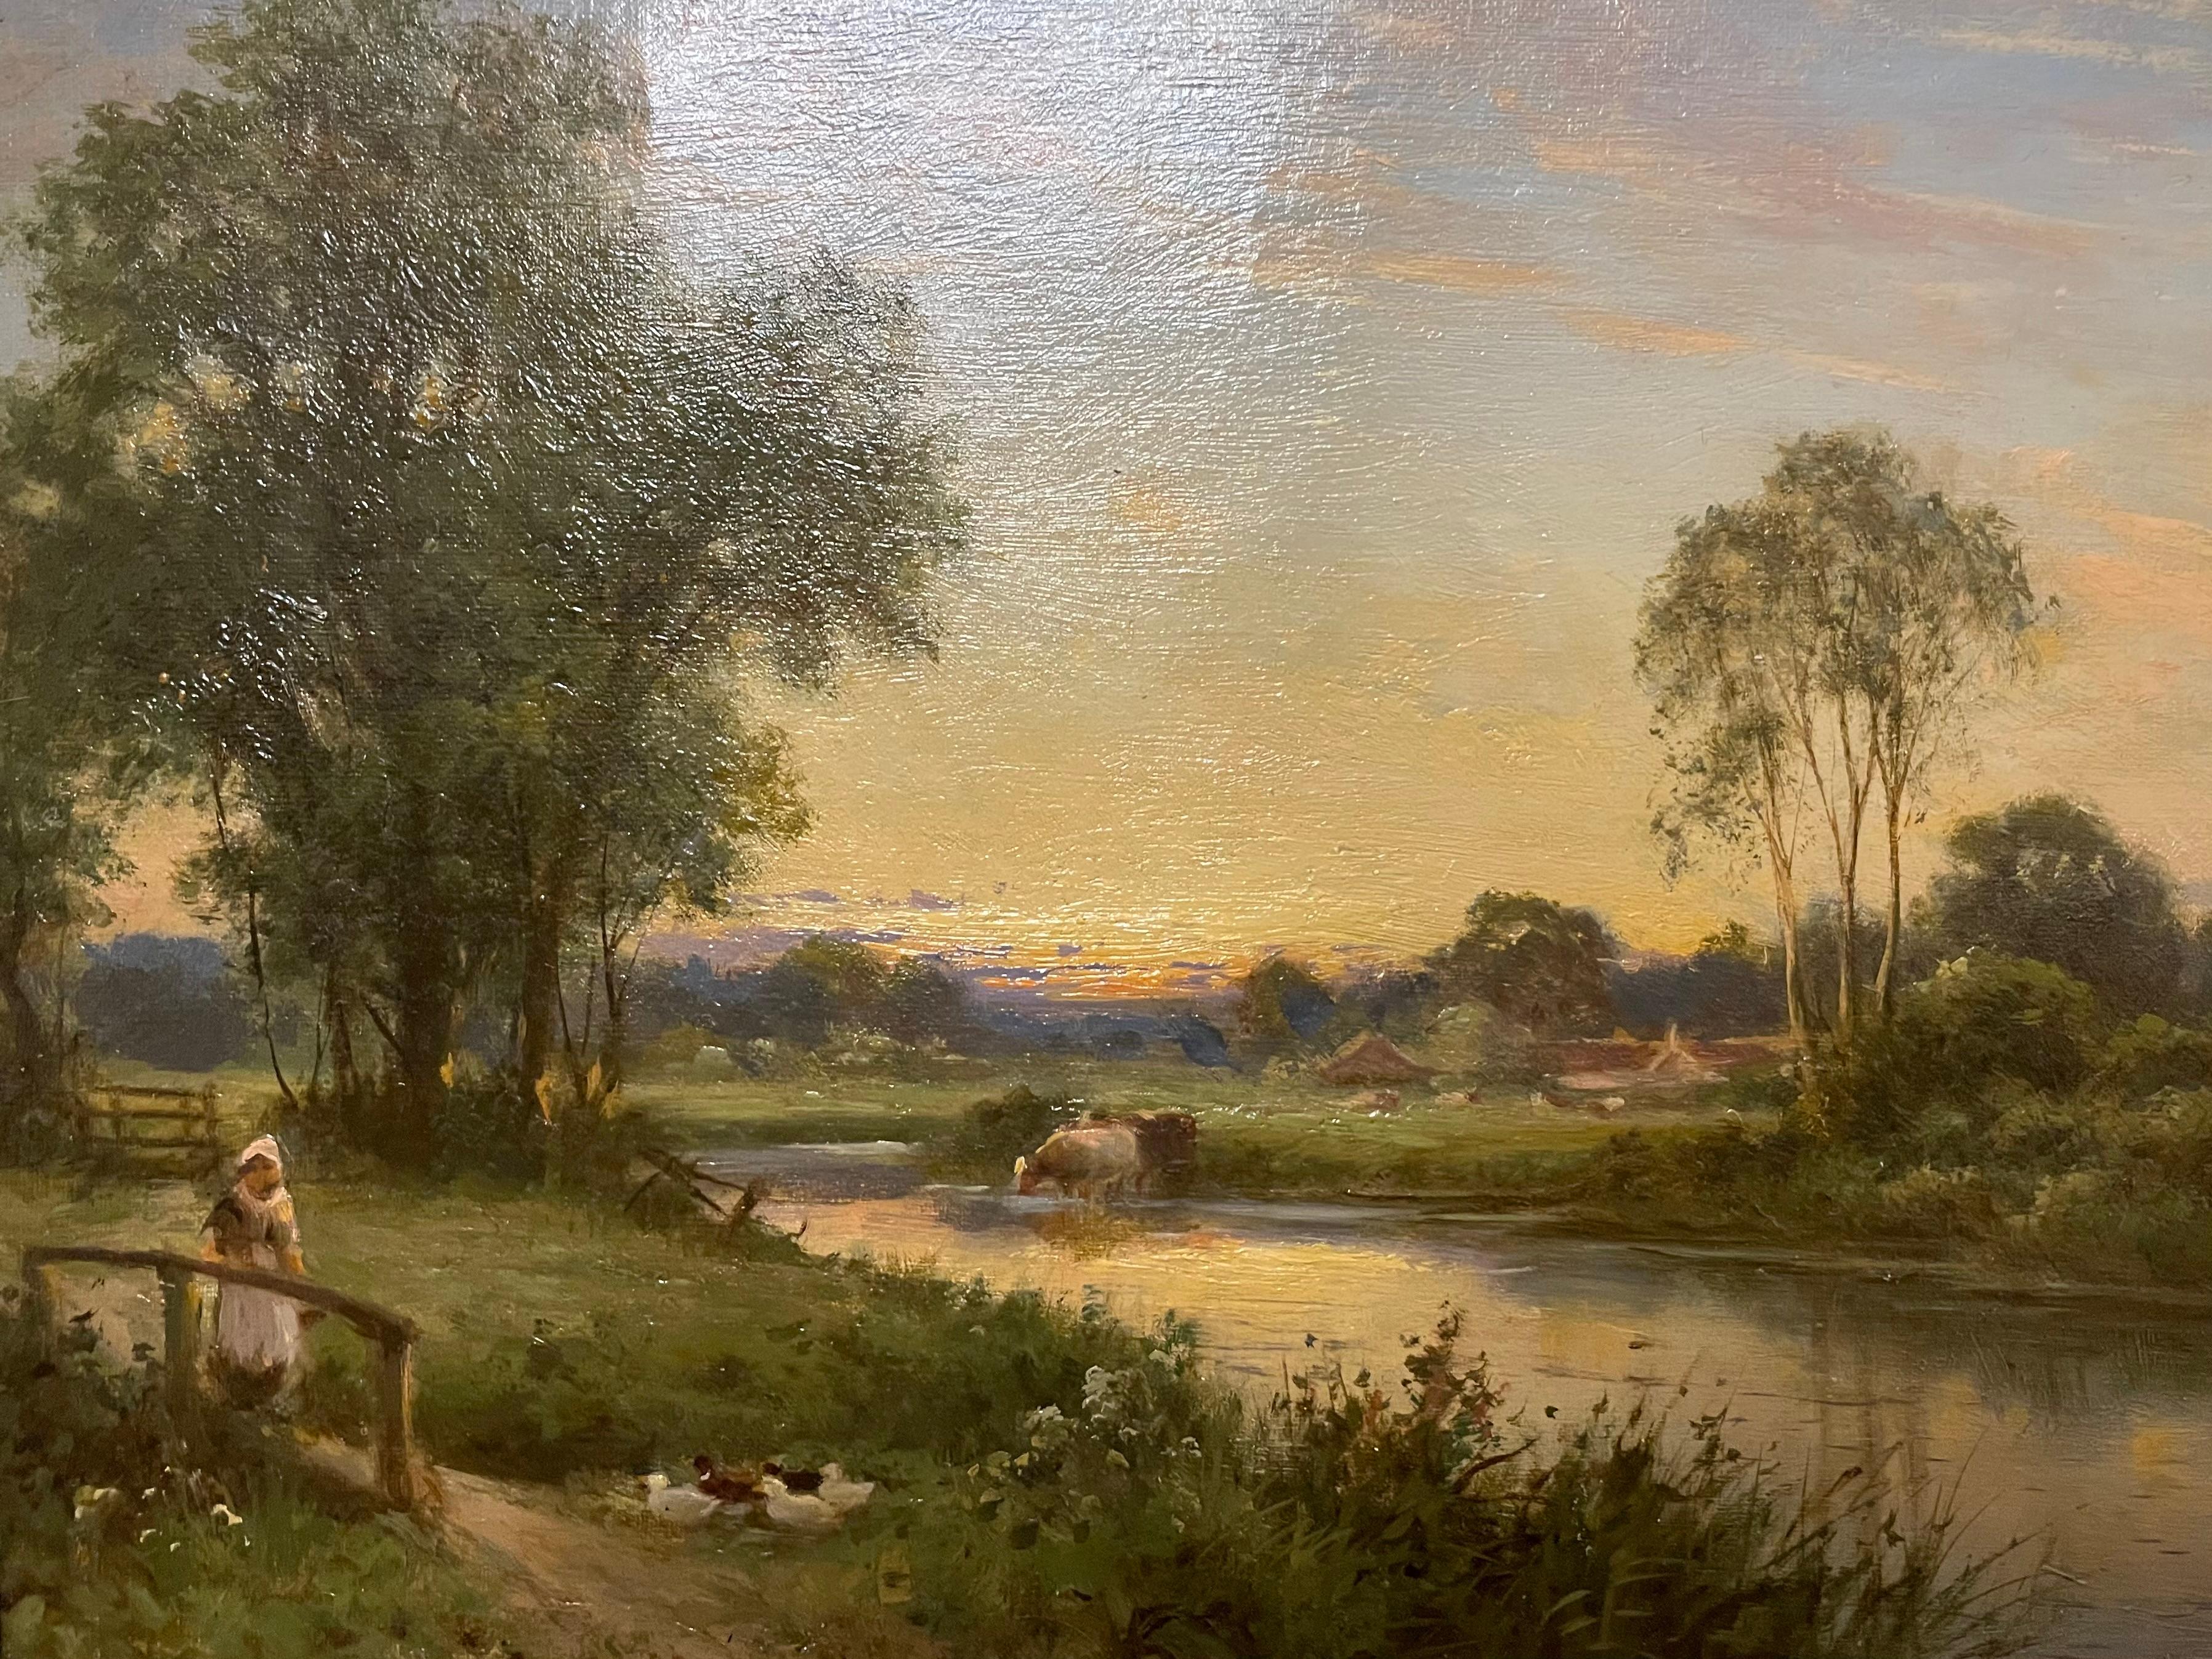 Shere, Surrey, huile sur toile, paysage, 19e siècle - Painting de George Vicat Cole RA